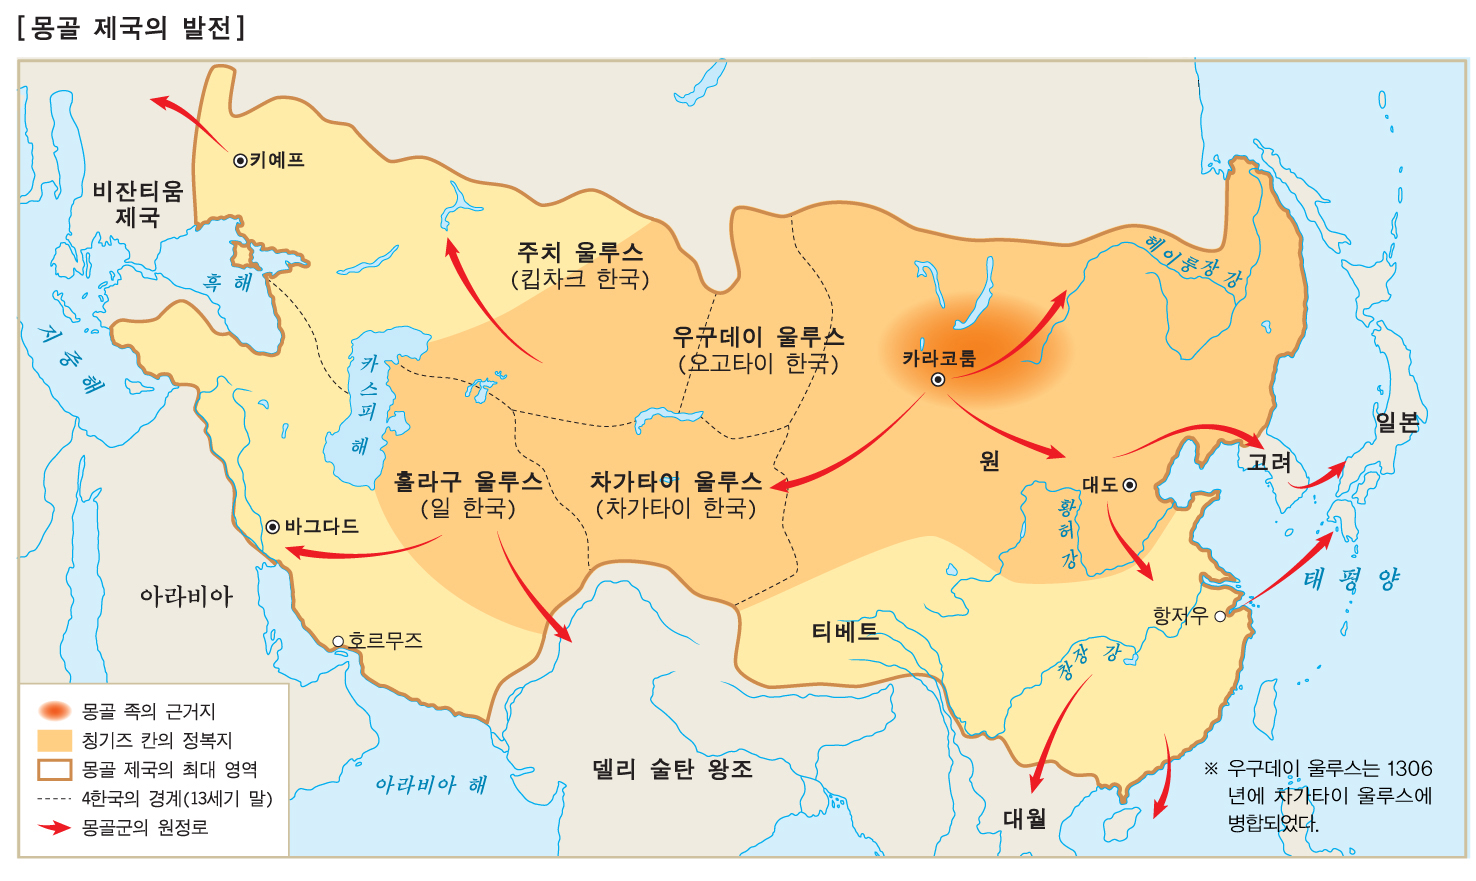 몽골 제국